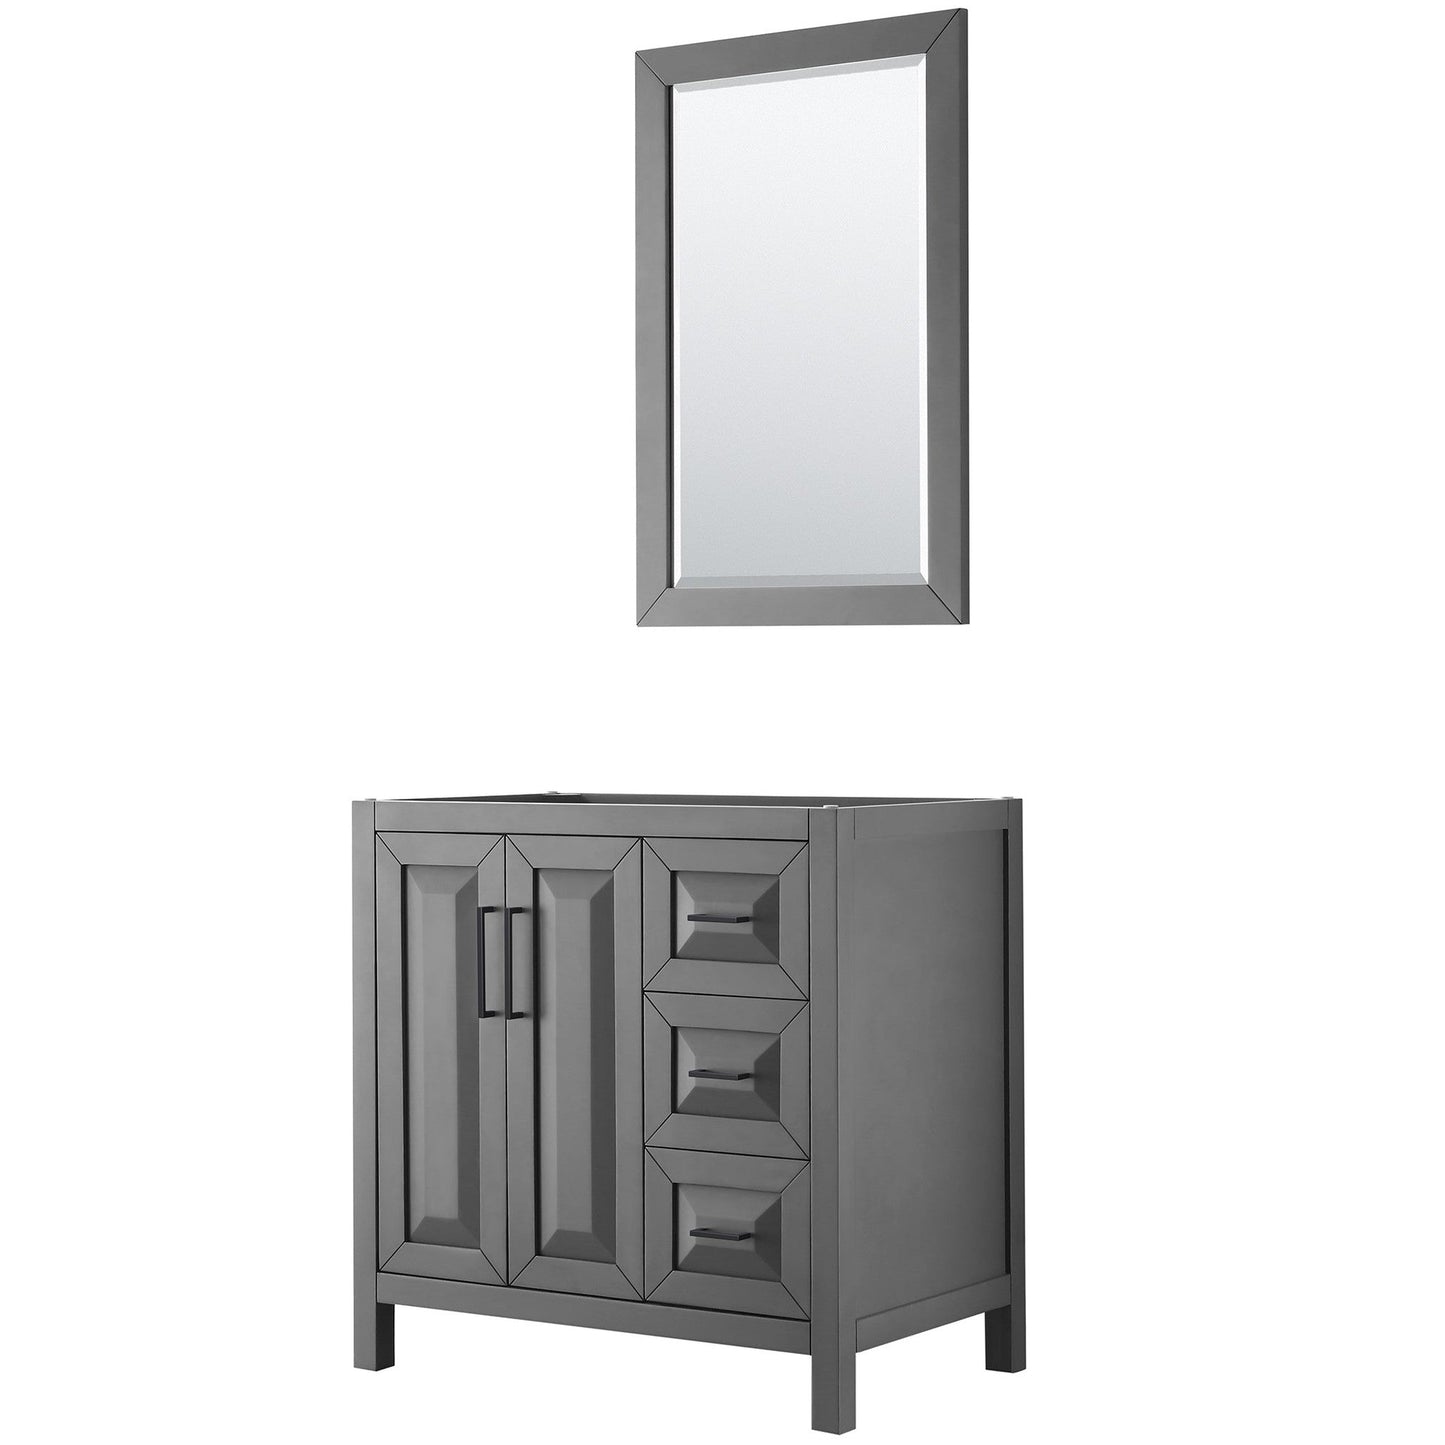 Daria 36" Single Bathroom Vanity in Dark Gray, No Countertop, No Sink, Matte Black Trim, 24" Mirror